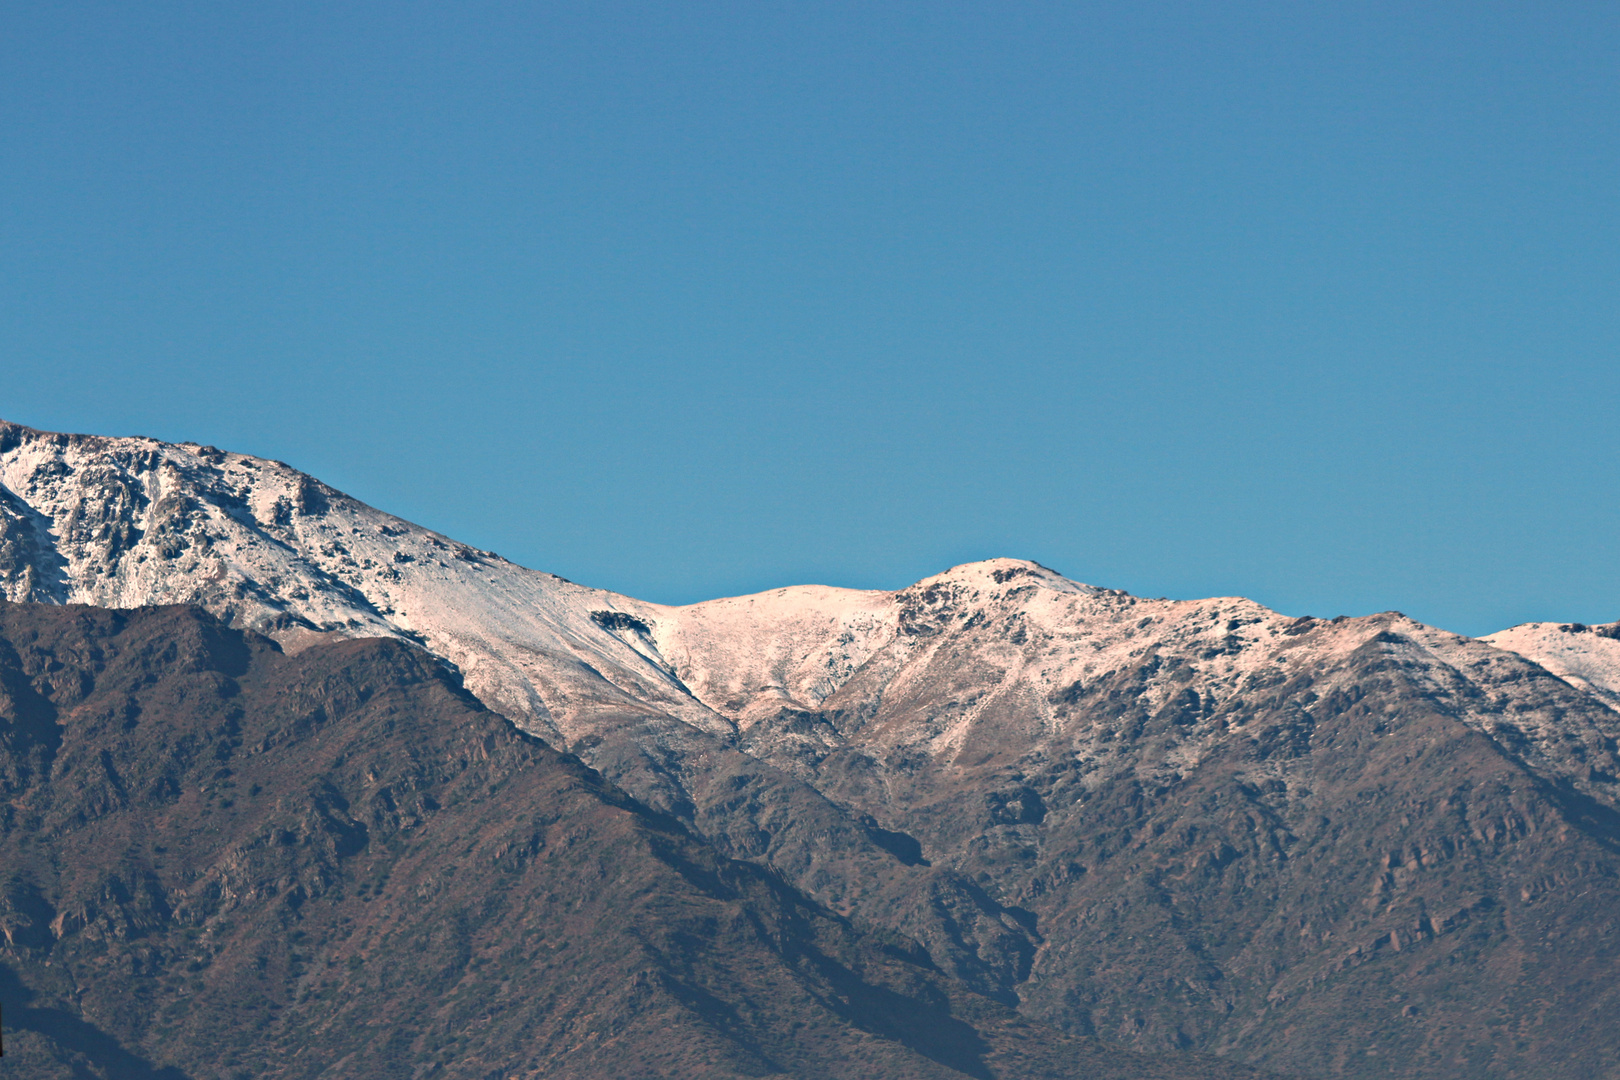 The Andes Santiago de Chile 19 de Mayo 2013